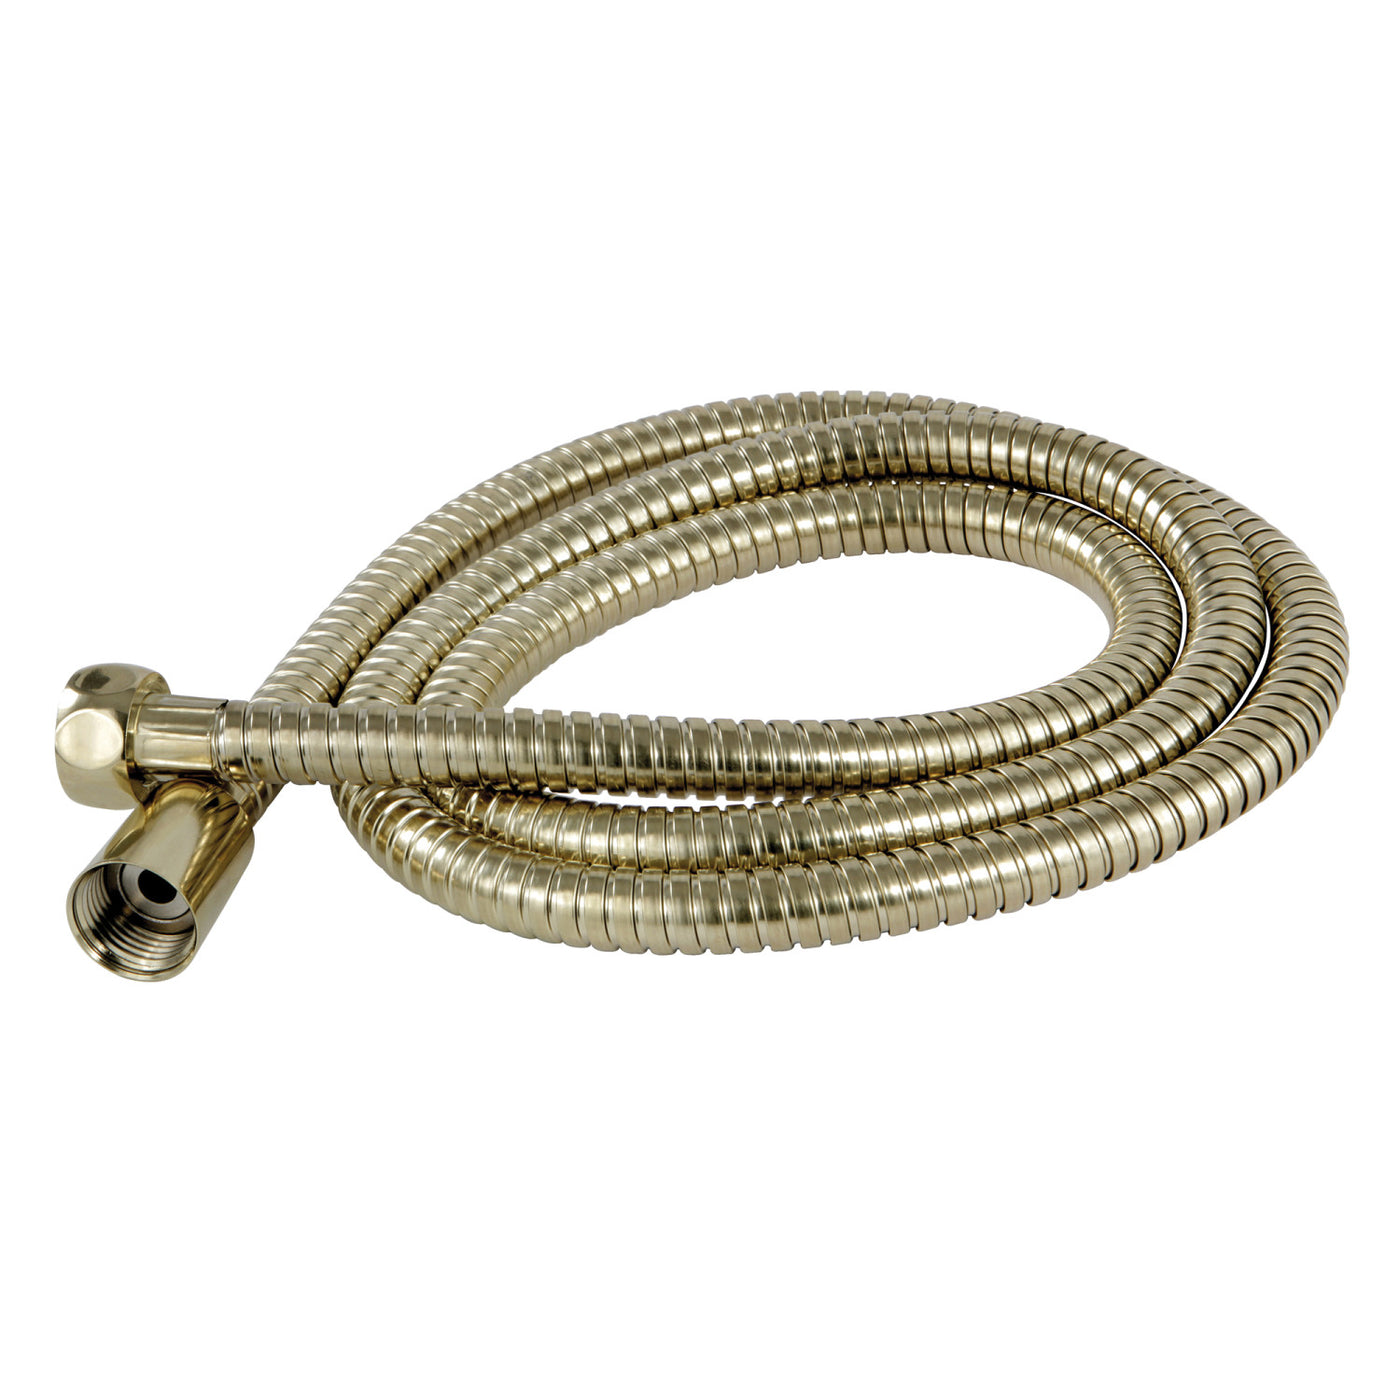 Elements of Design ED1030-2 59-Inch Shower Hose, Polished Brass